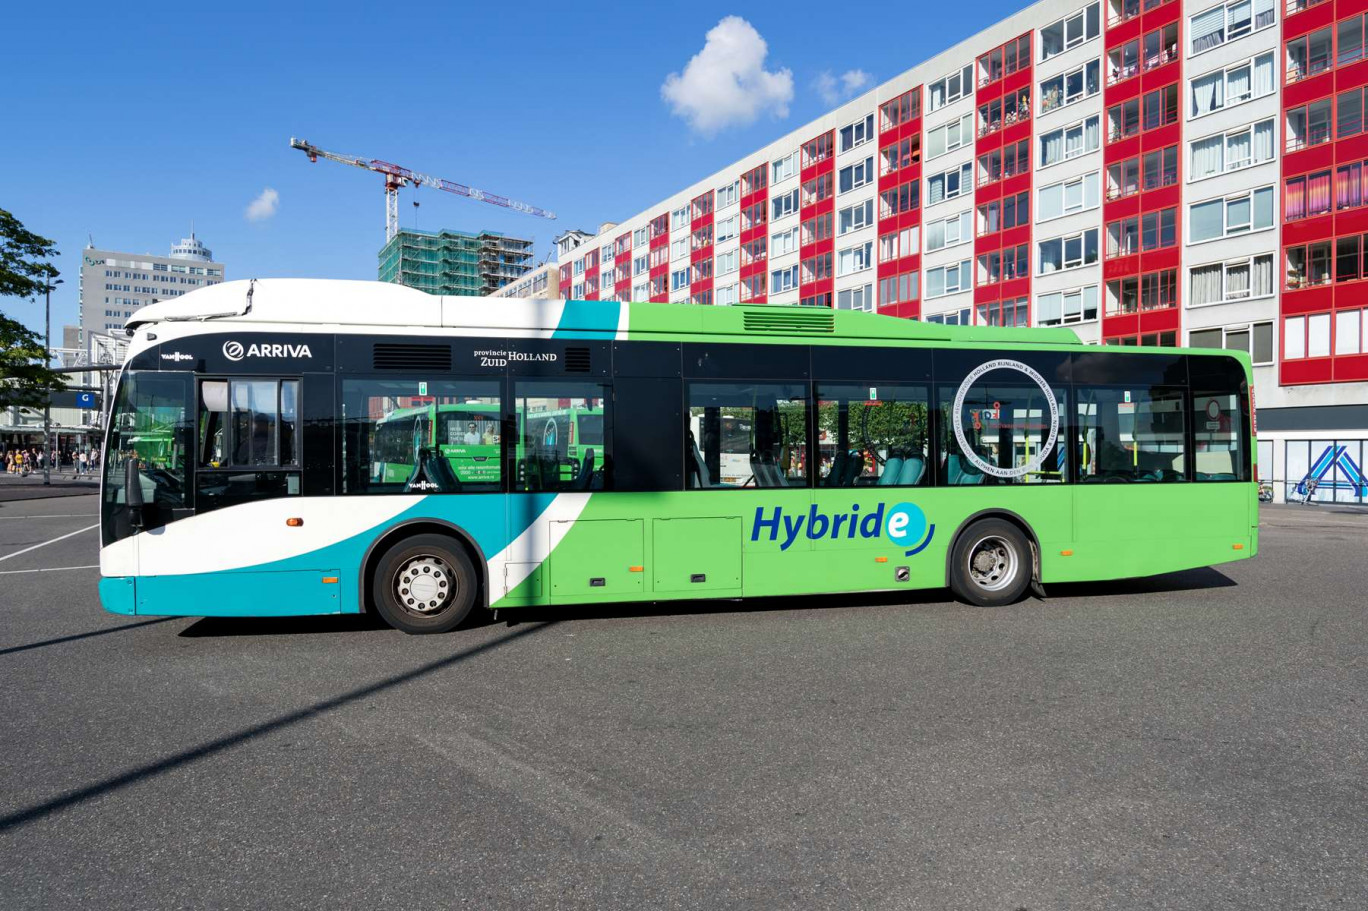 L'opérateur de transport de Wallonie va recevoir progressivement une commande de 600 nouveaux véhicules dont 120 bus hybrides. © Björn Wylezich